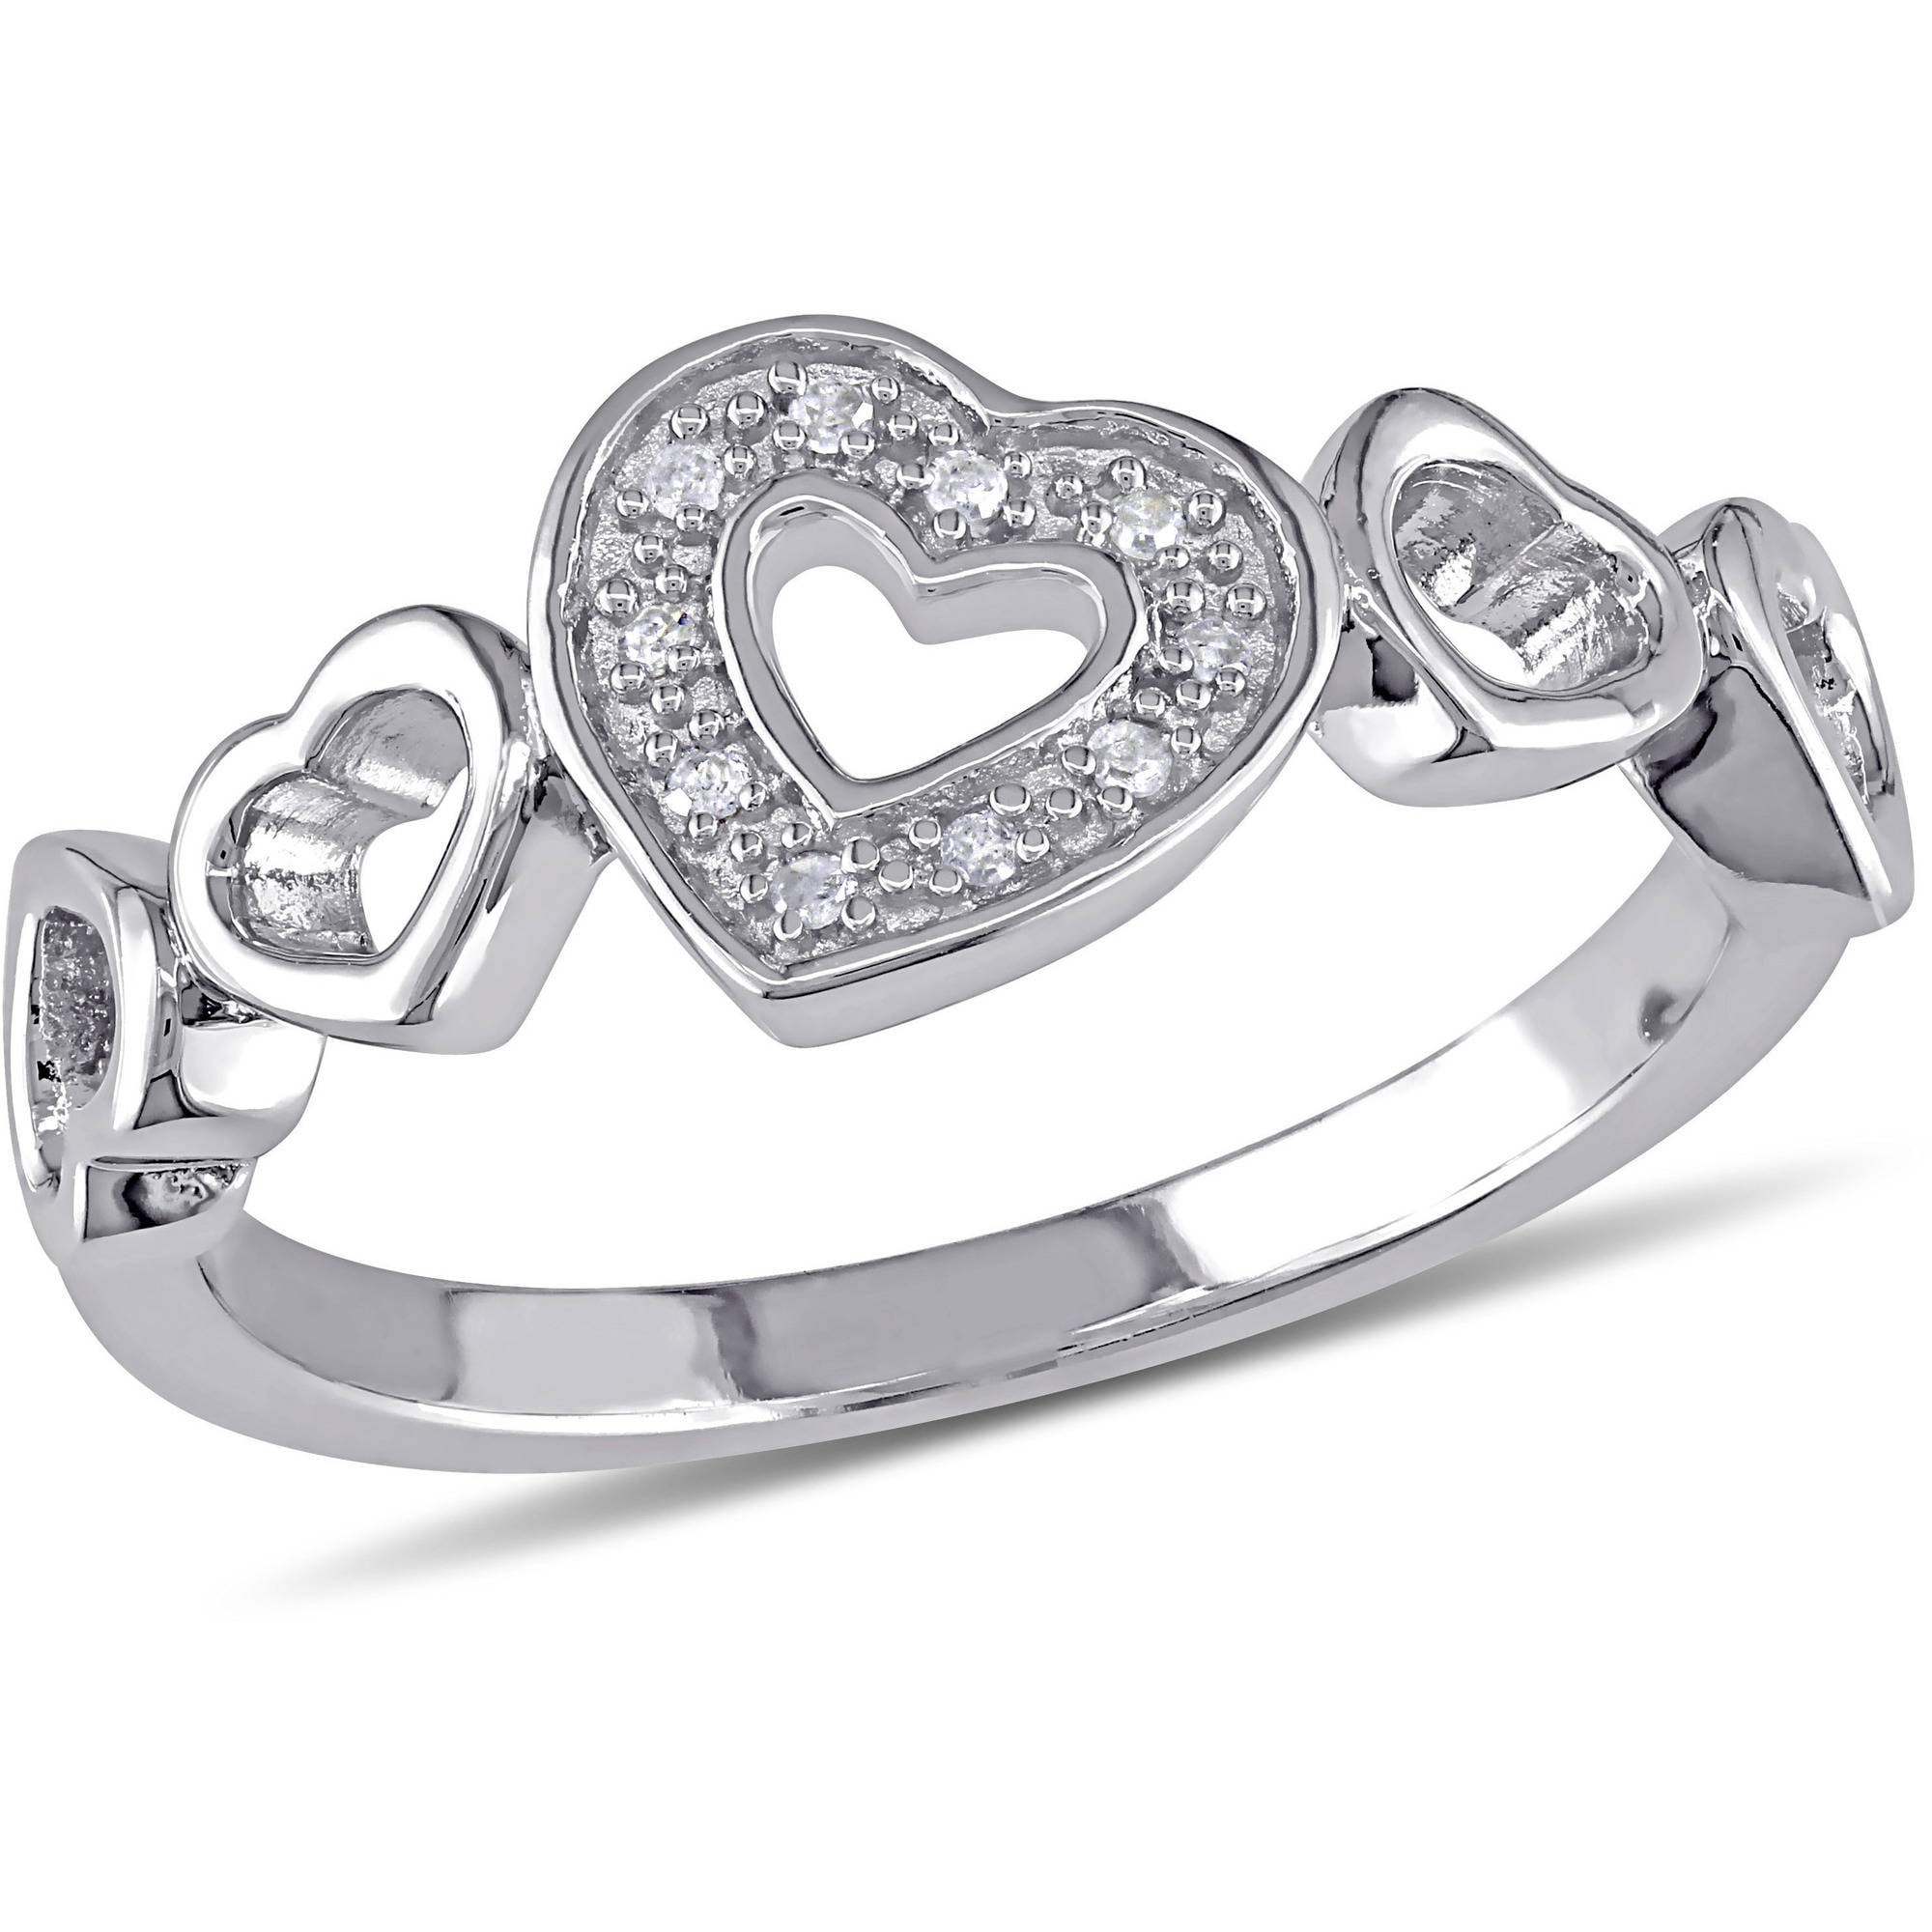 Miabella - Diamond-Accent Sterling Silver Heart Ring - Walmart.com ...